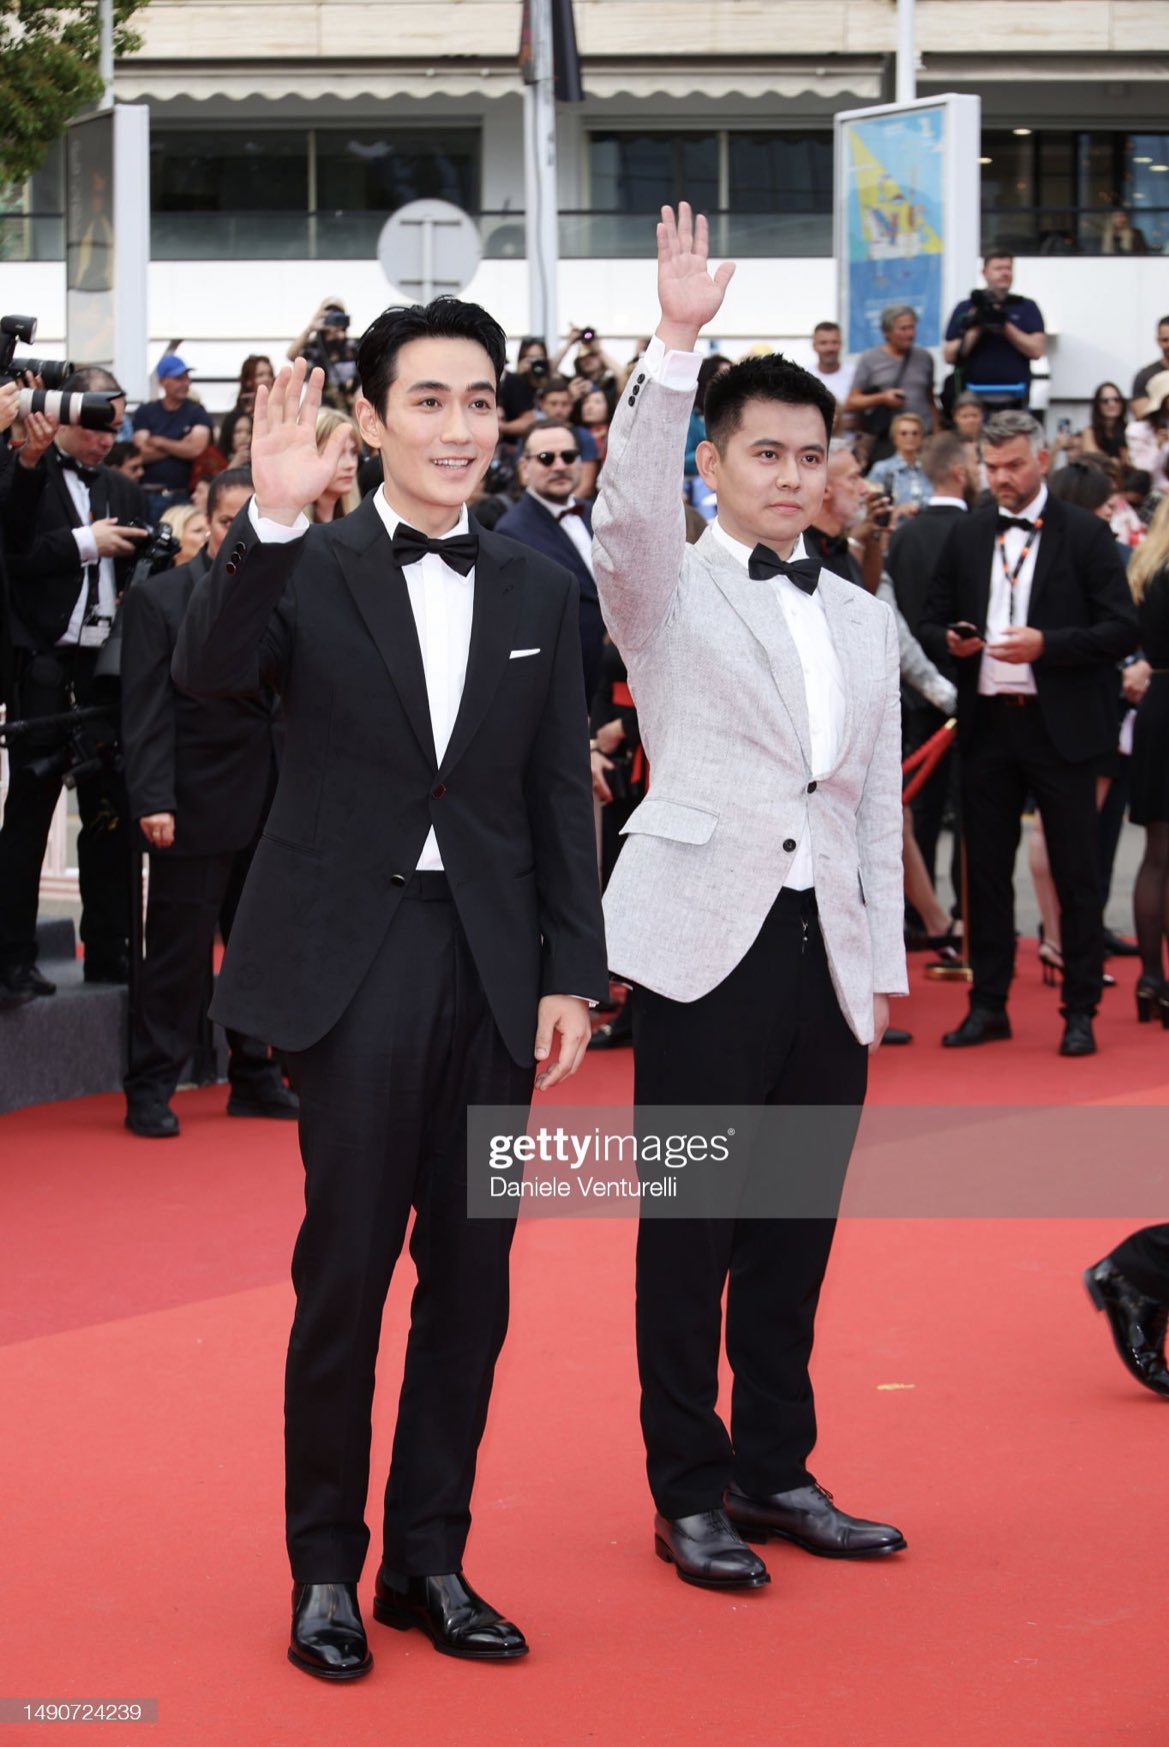 Dàn sao châu Á qua ống kính Getty Images tại LHP Cannes 2023: Chompoo Araya so kè ác liệt với Phạm Băng Băng, Chu Nhất Long soái khí như tổng tài - Ảnh 20.